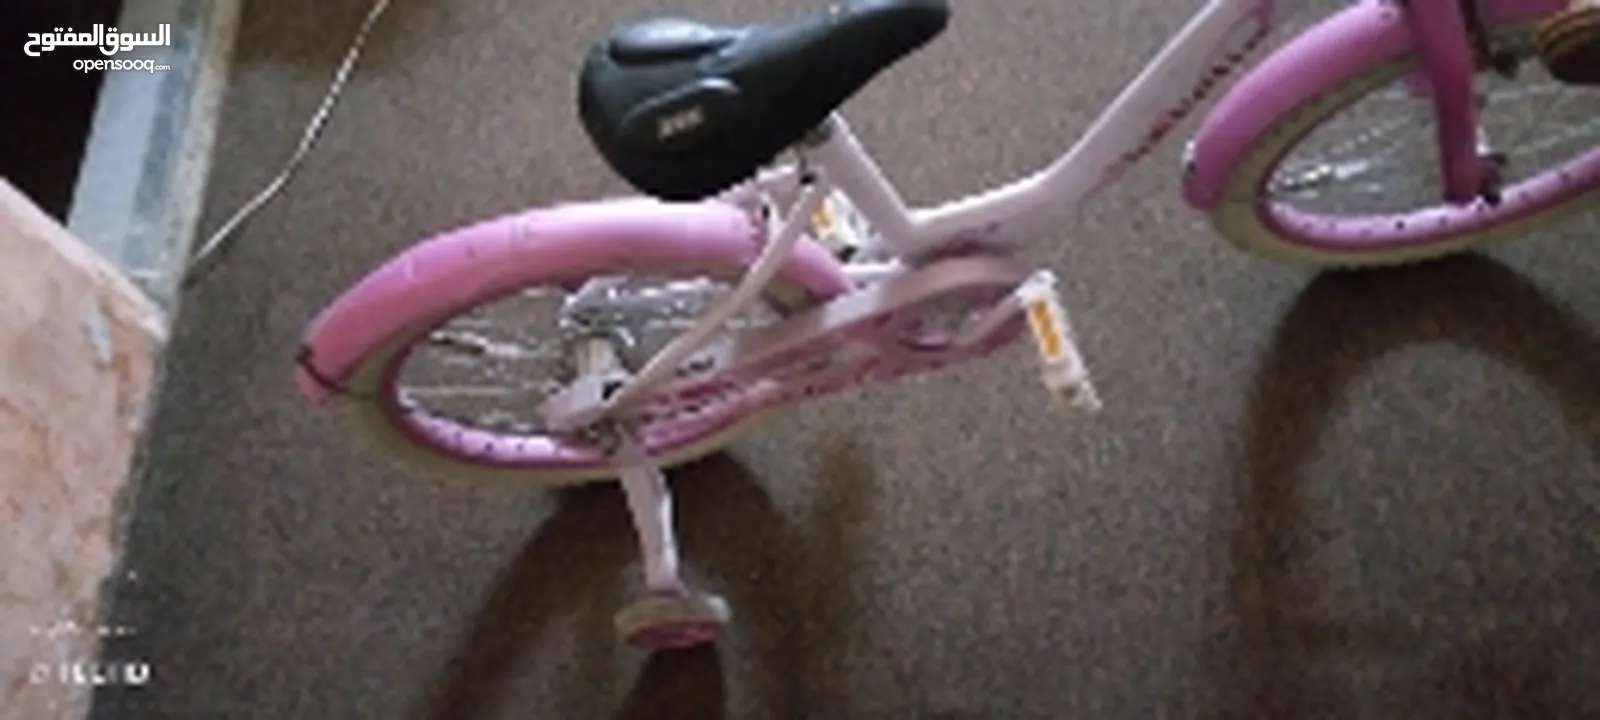 دراجه هوائيه بناتيه